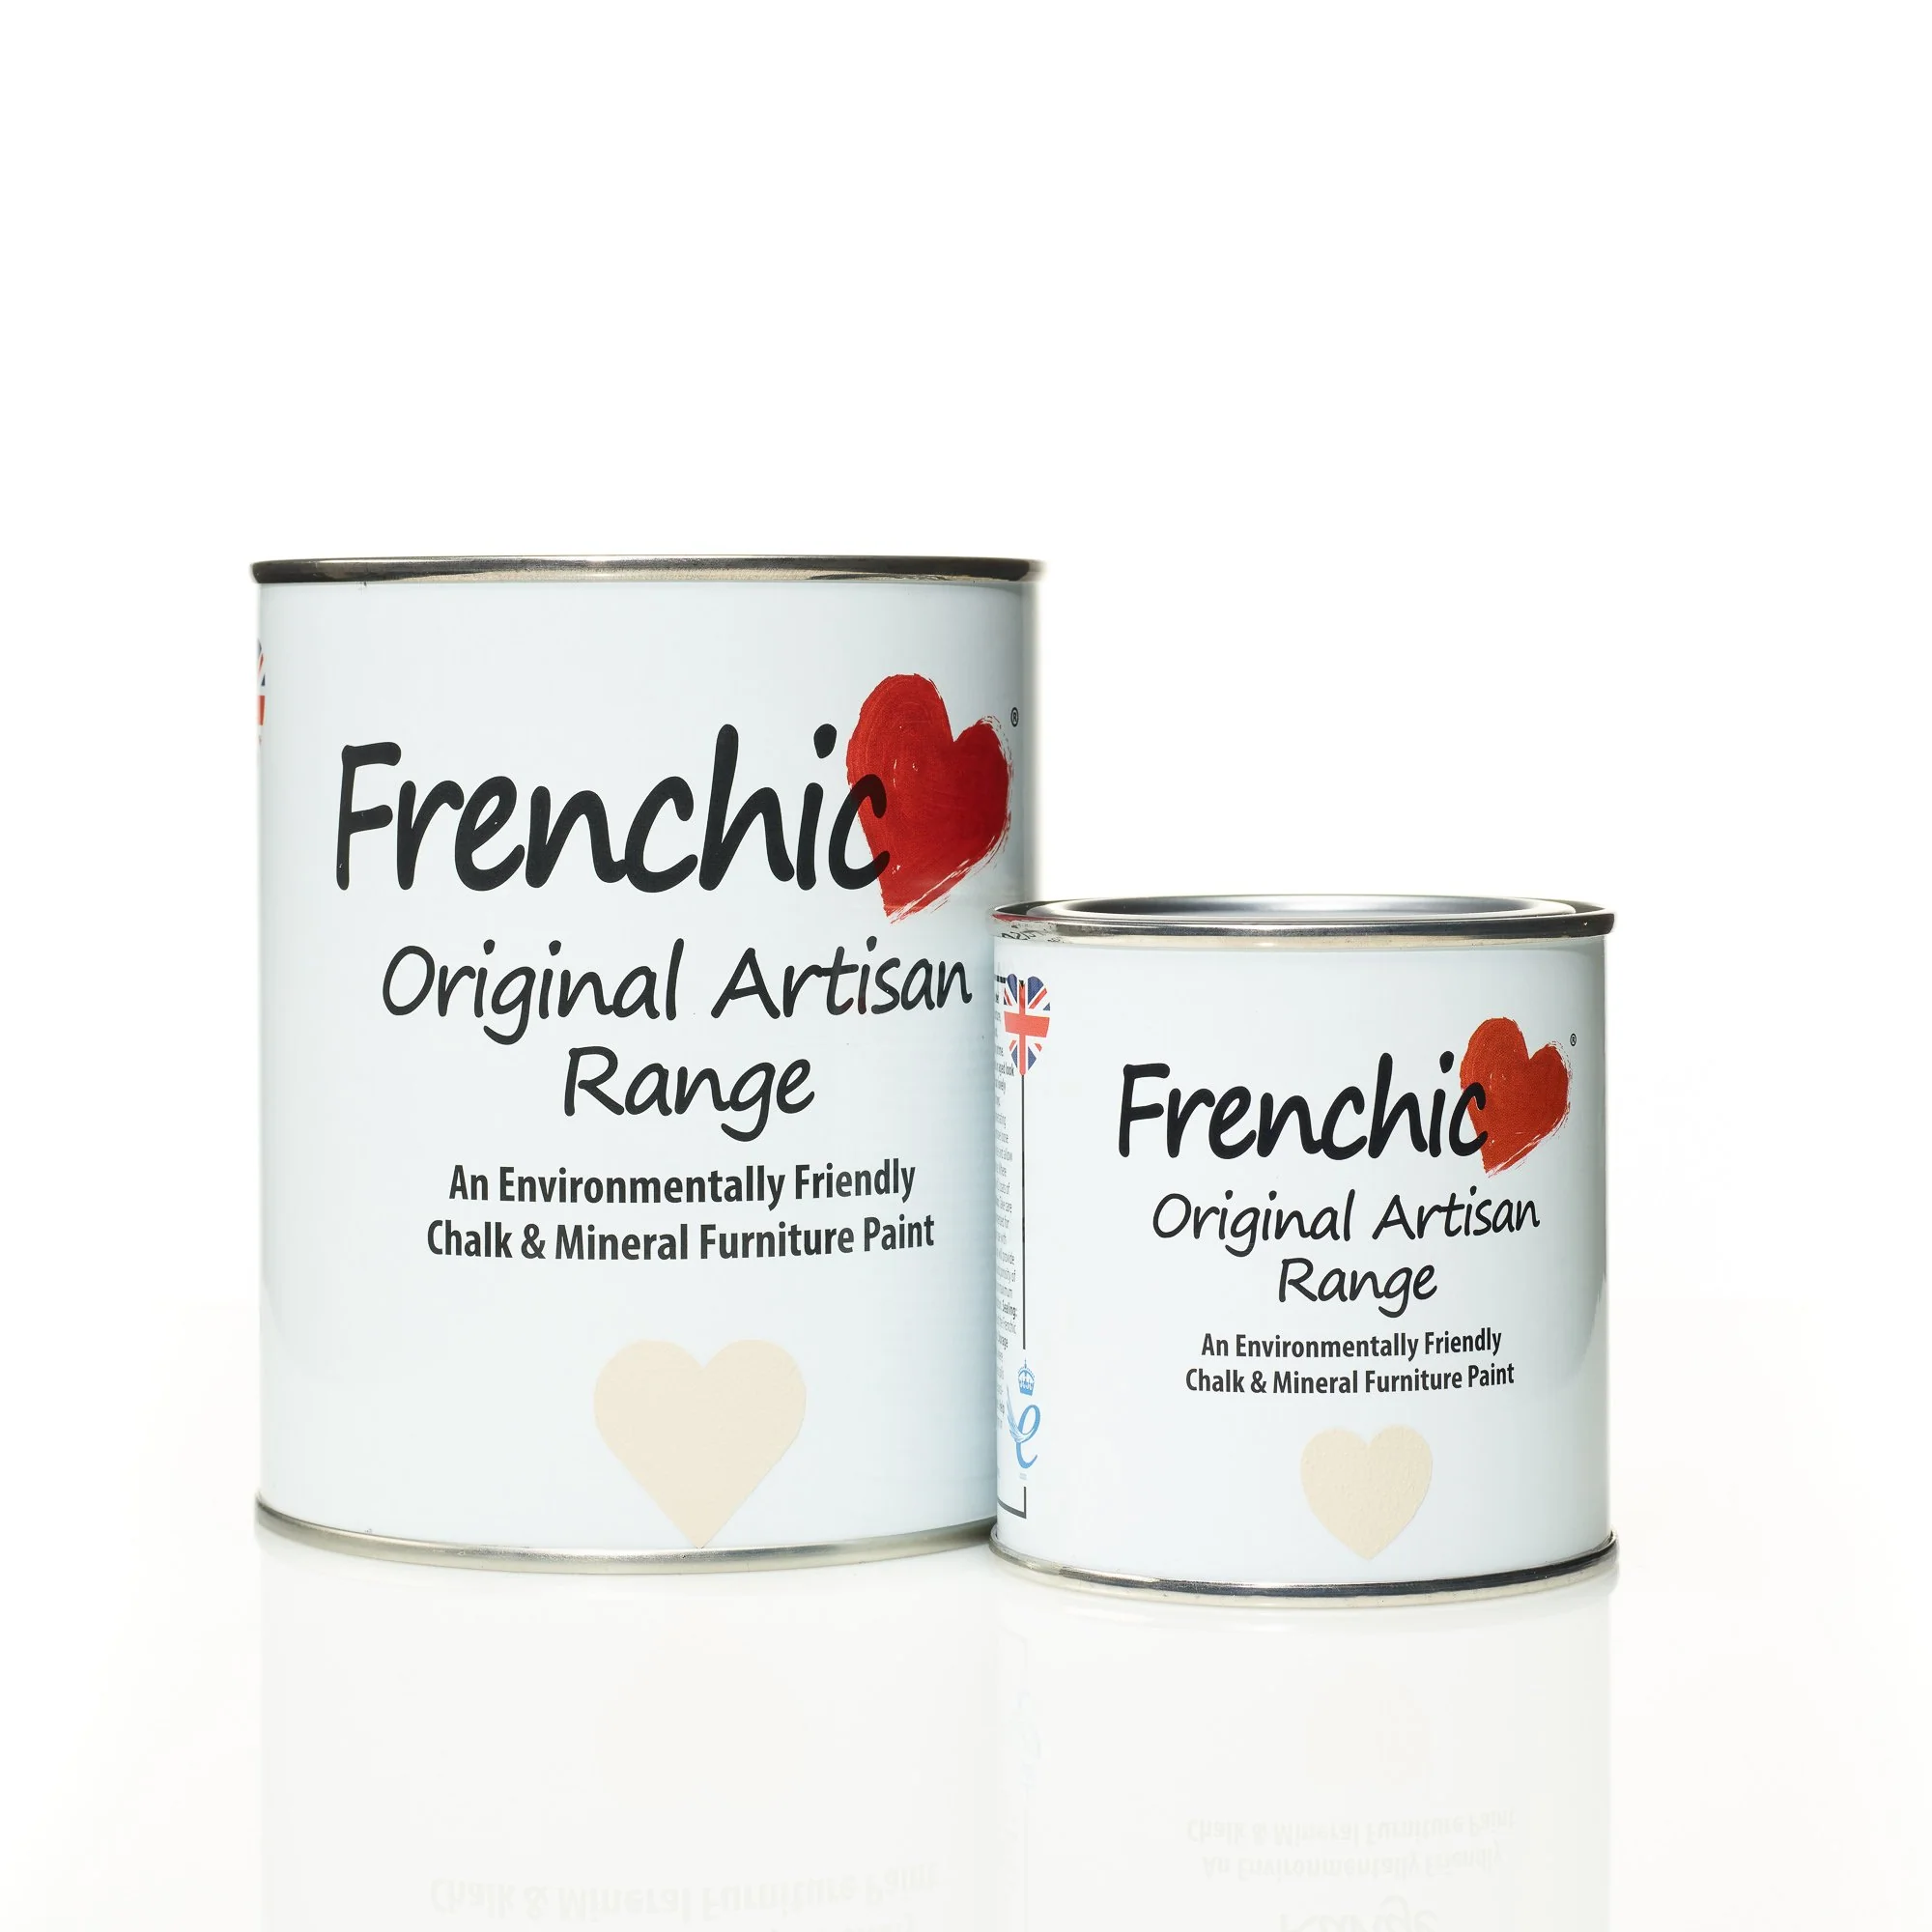 Piesková kriedová farba na nábytok Frenchic Original Artisan Range Sugar Puff